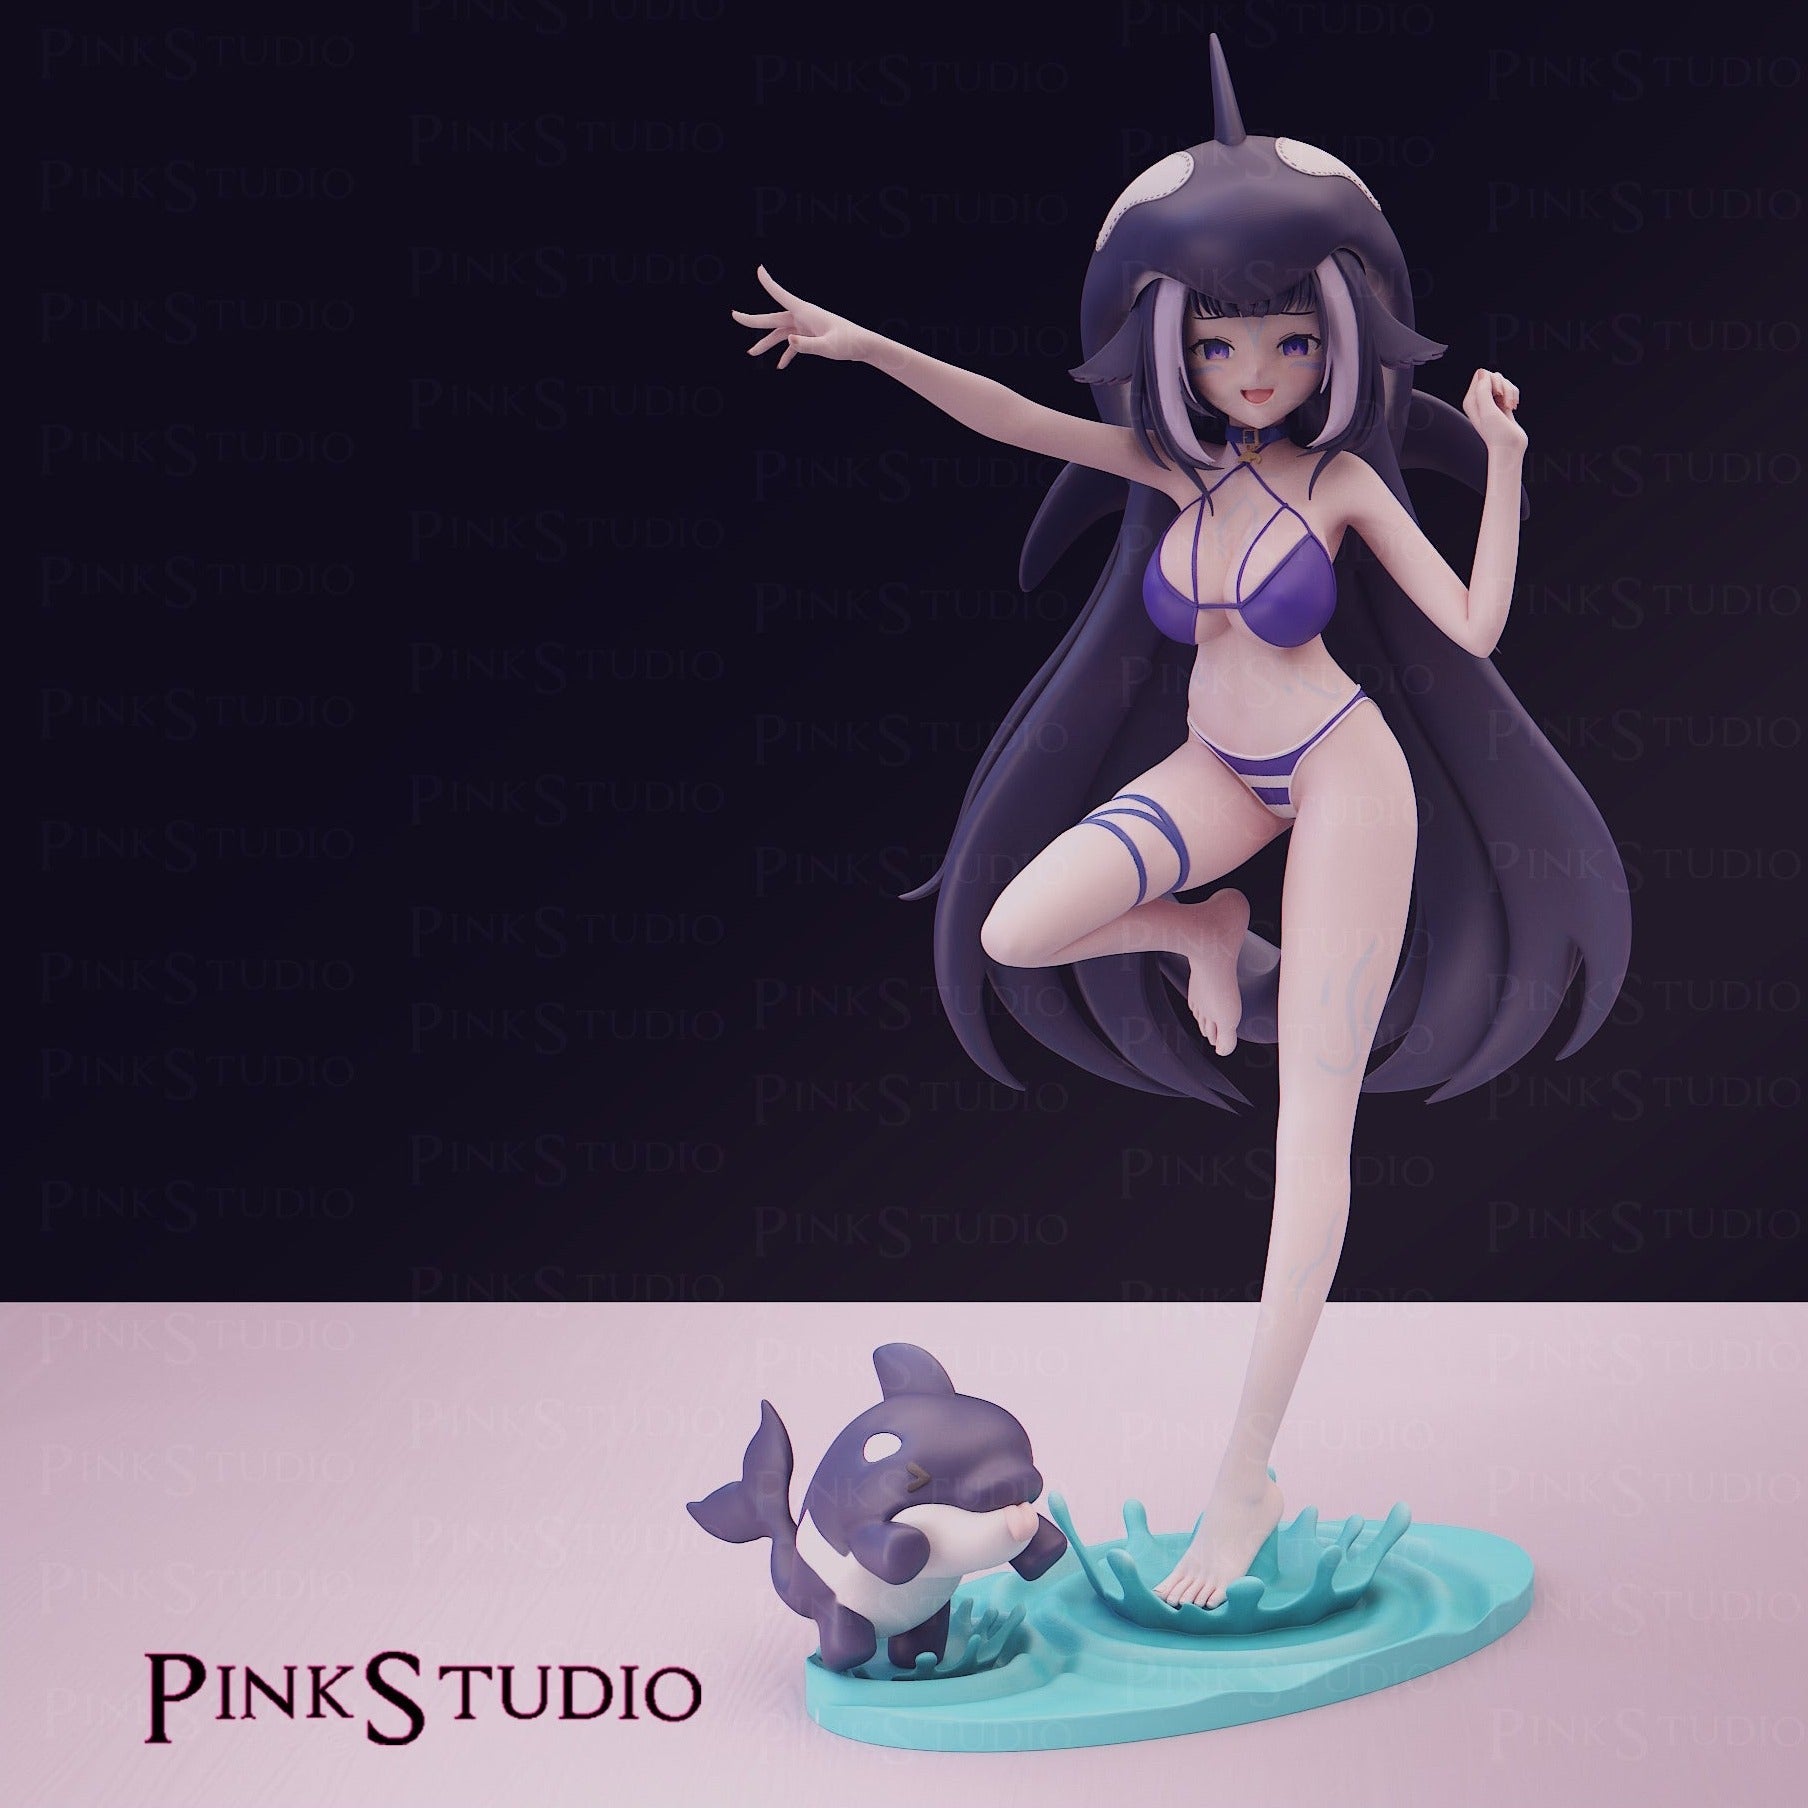 Shylily Figure 3D Printed Fanart DIY Garage Kit , Unpainted , NSFW Figurine , Nude Figurine , Sexy Miniature , Bondage figure , Naked Waifu , Adult Figurine , Anime Figure